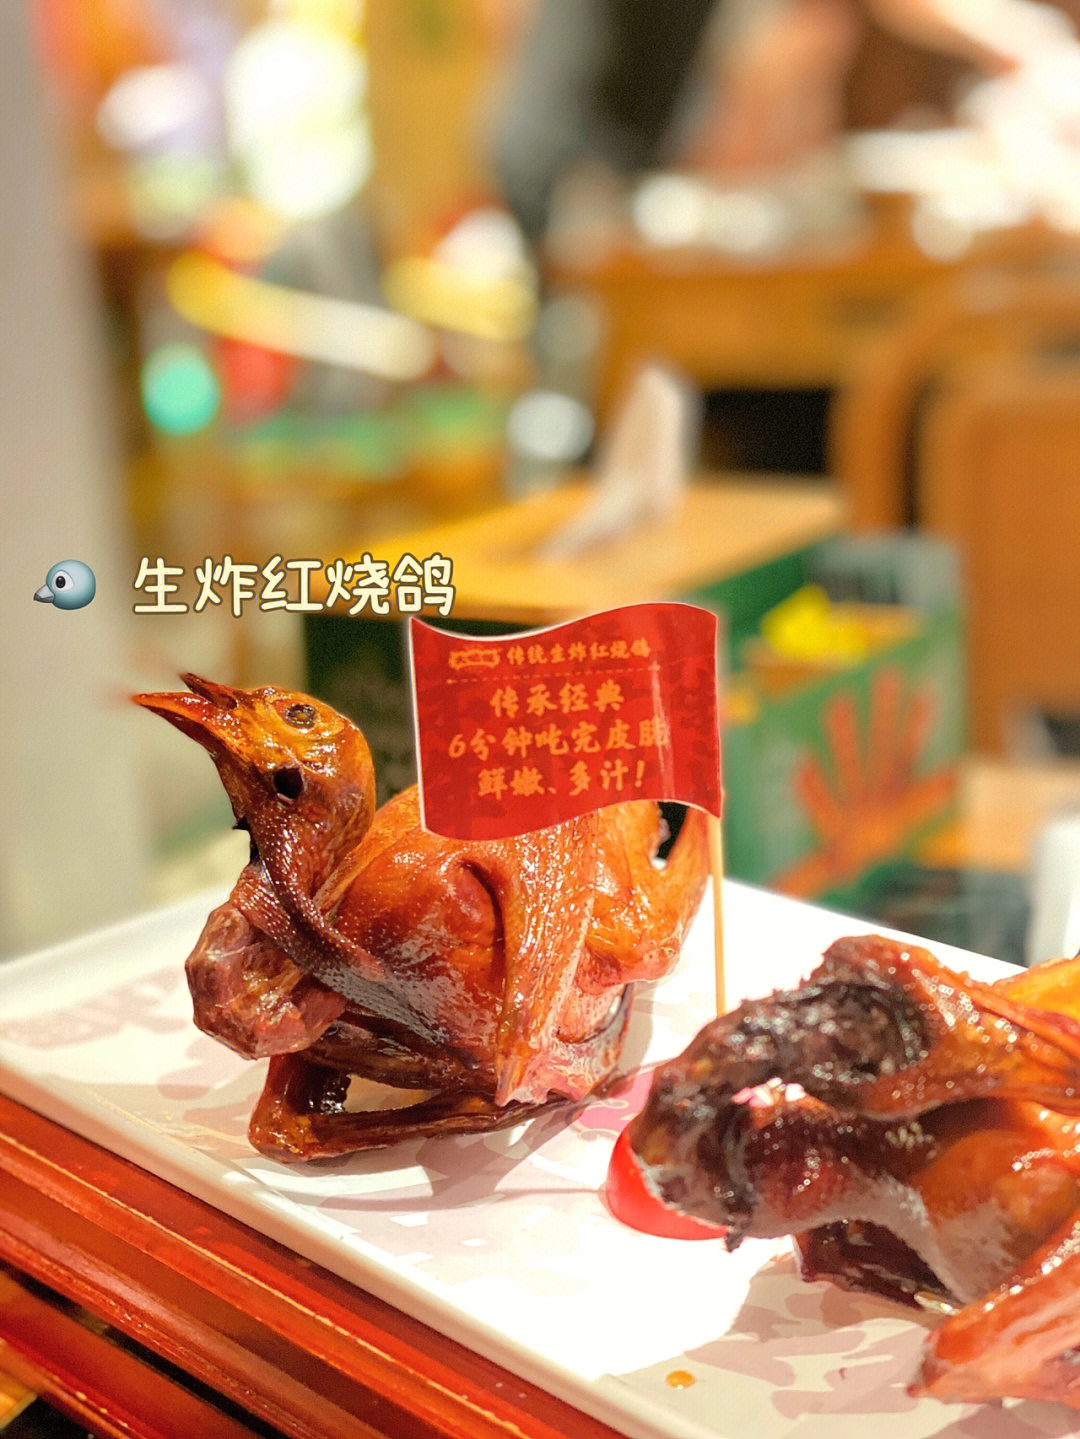 广州必打卡美食专门吃鸽子的大鸽饭